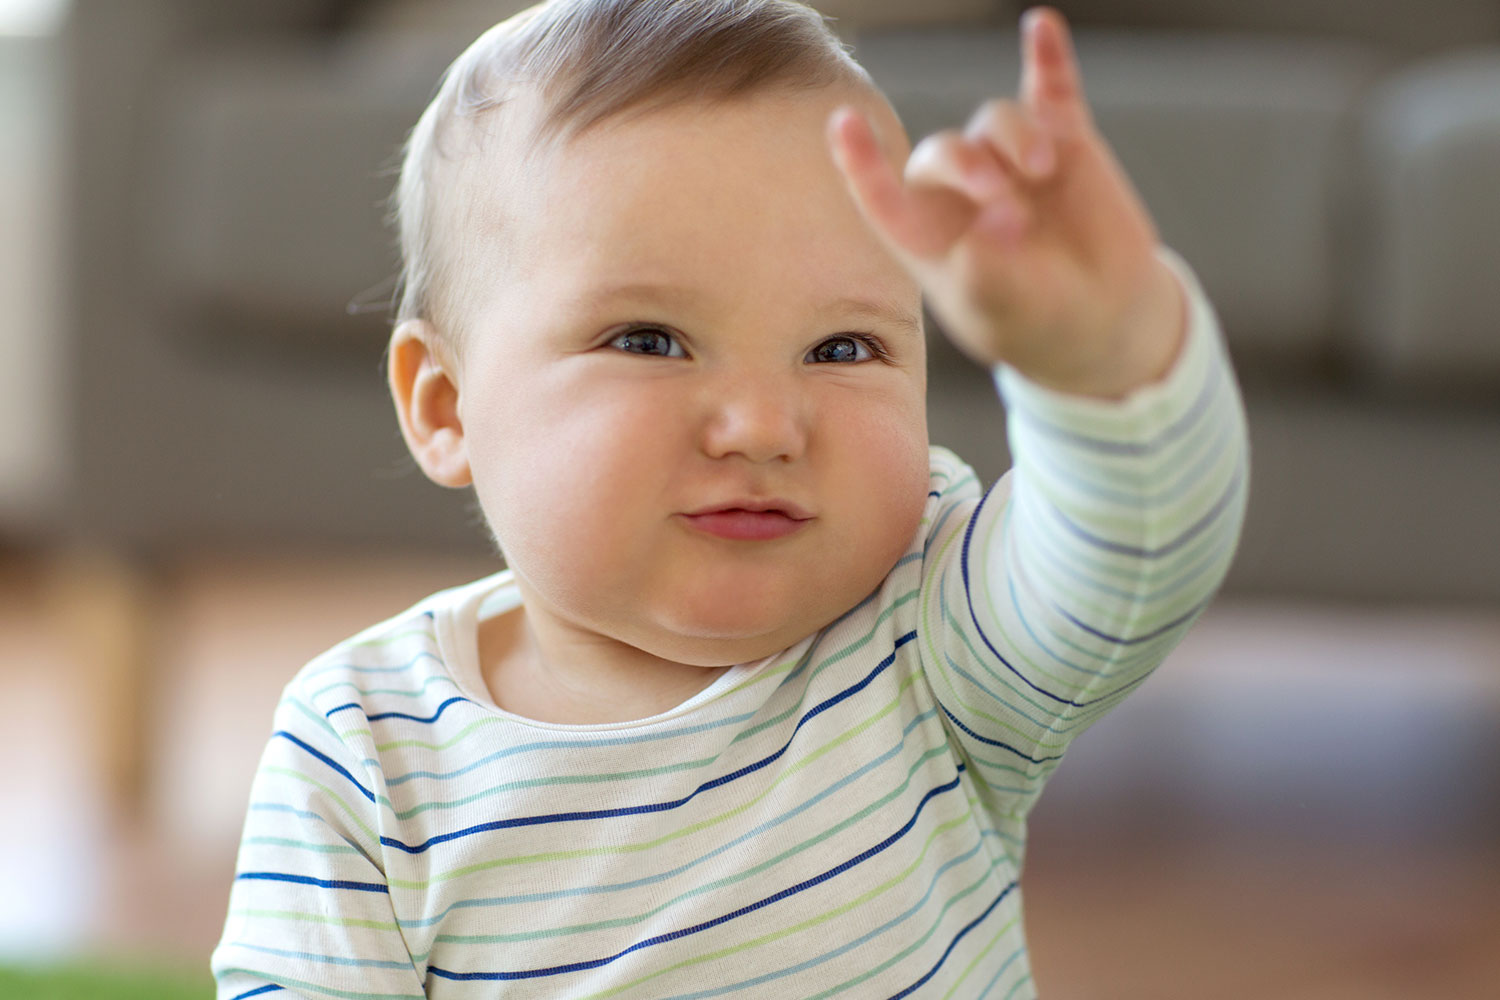 El bebé tiene una camisa a rayas con la mano izquierda hacia arriba para hacer una señal.